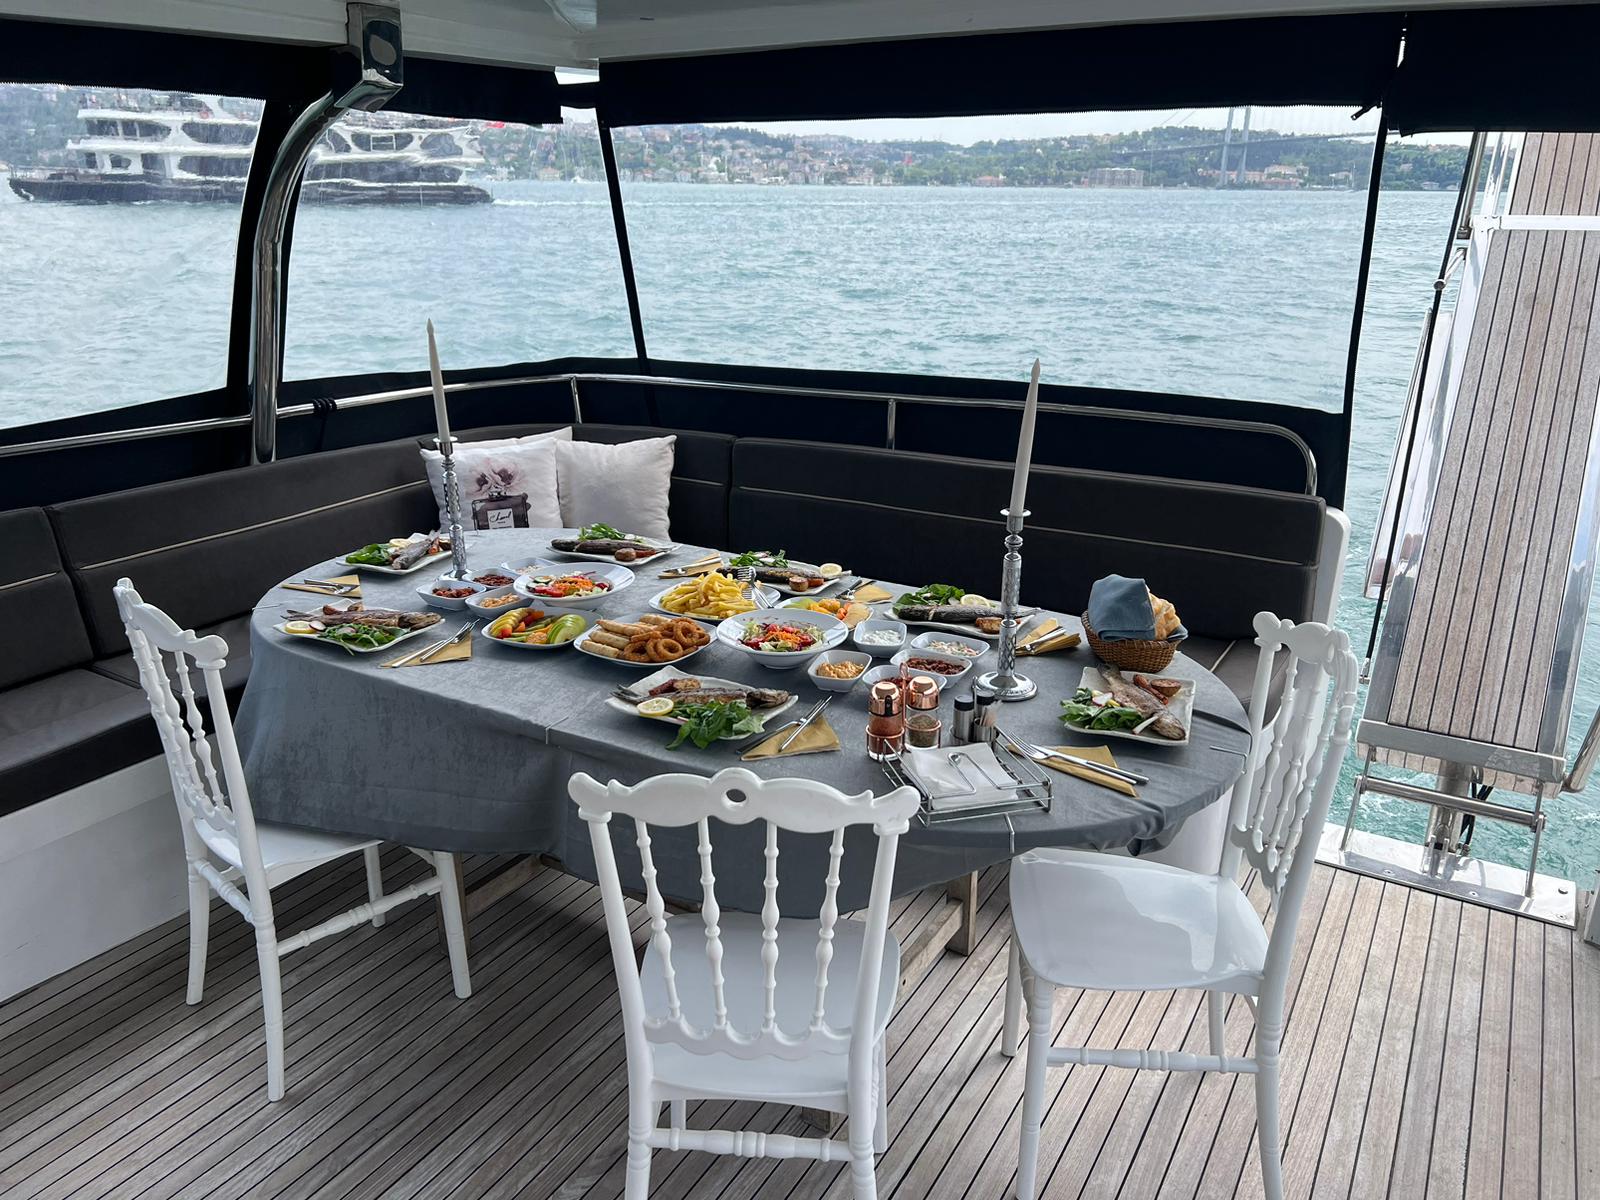 Weekend getaway on a yacht exploring Istanbul's coastline.